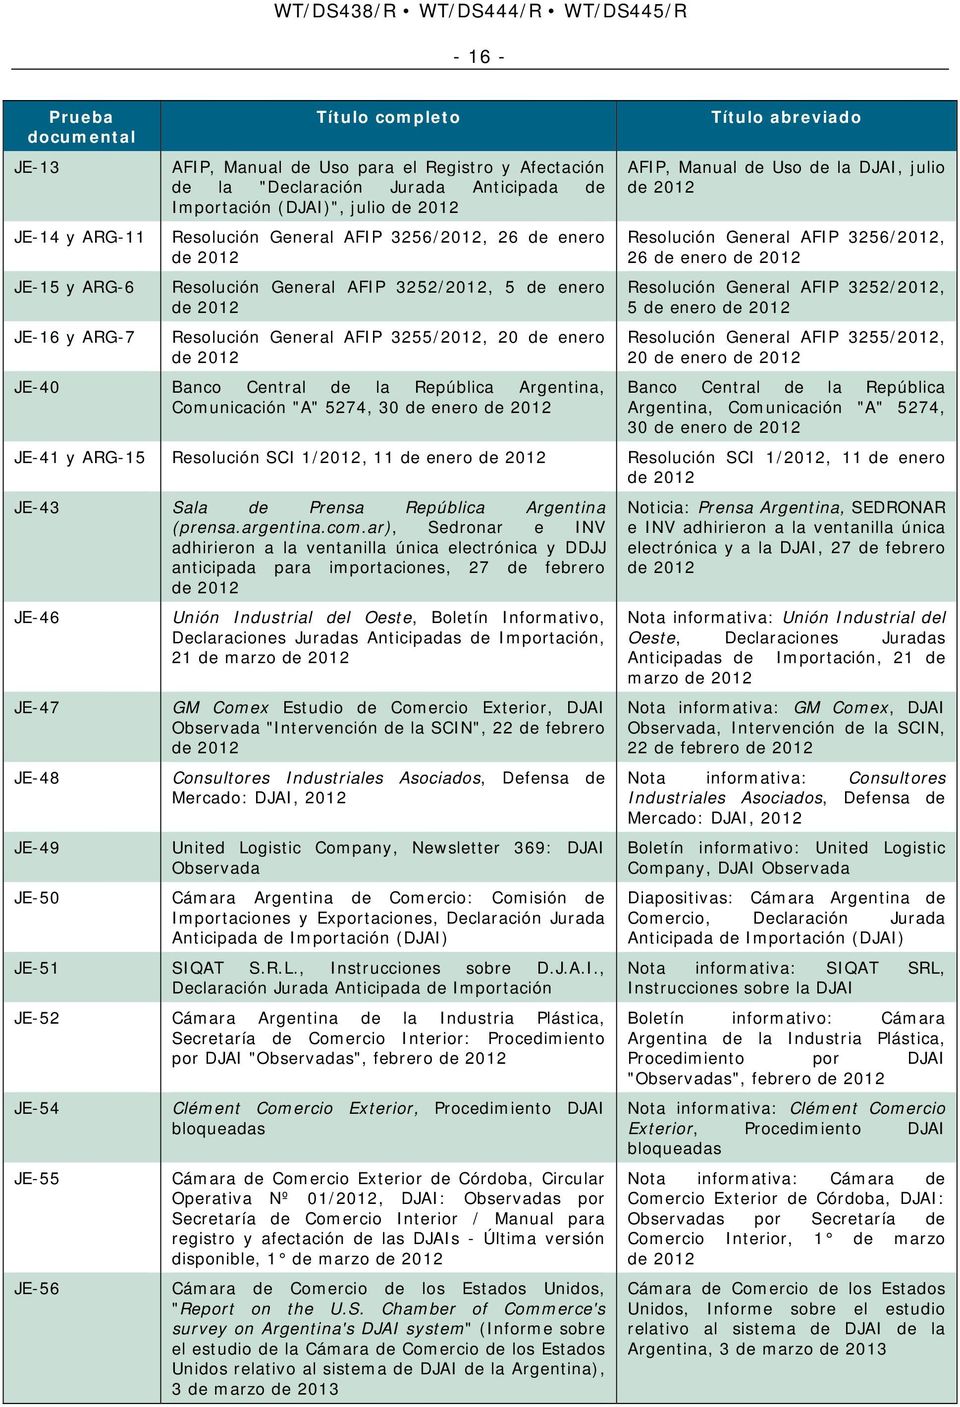 Central de la República Argentina, Comunicación "A" 5274, 30 de enero de 2012 Título abreviado AFIP, Manual de Uso de la DJAI, julio de 2012 Resolución General AFIP 3256/2012, 26 de enero de 2012